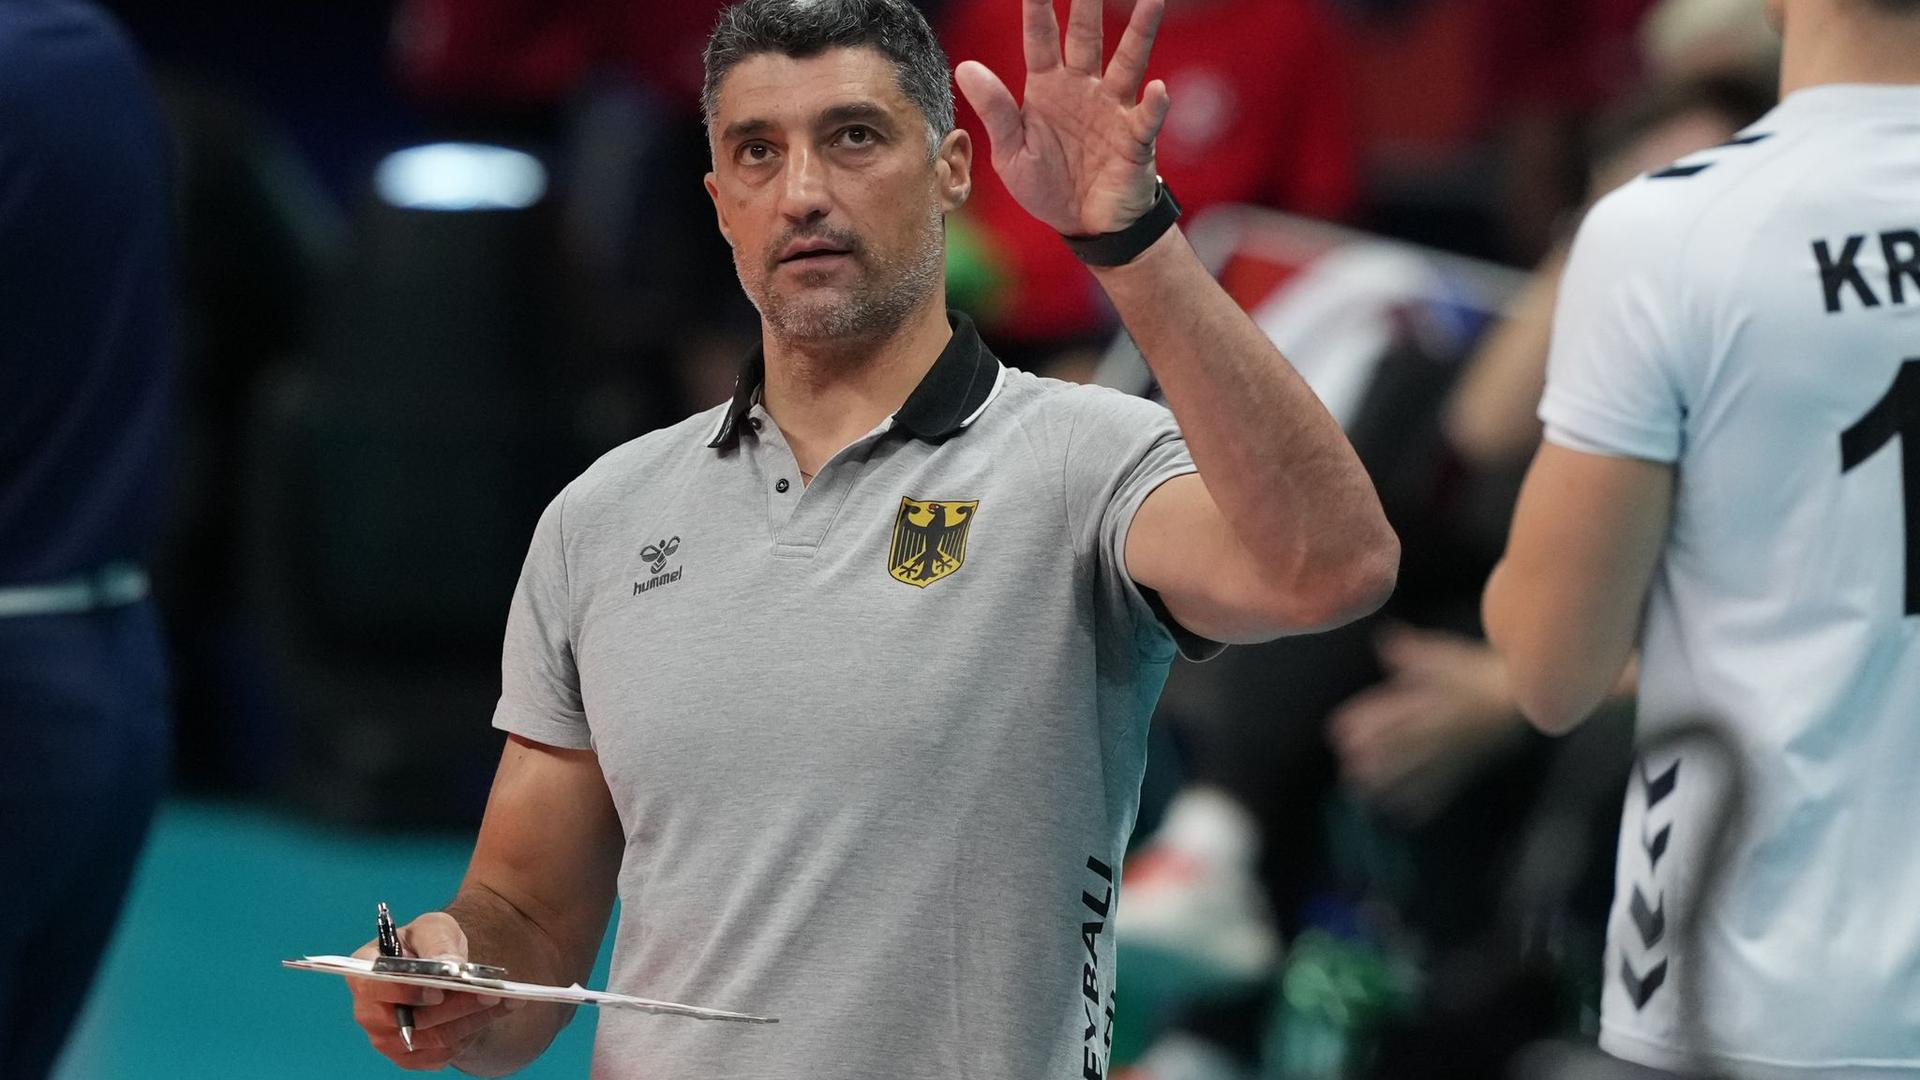 Strebt mit den deutschen Volleyballern einen Sieg über Italien an: Trainer Andrea Giani.